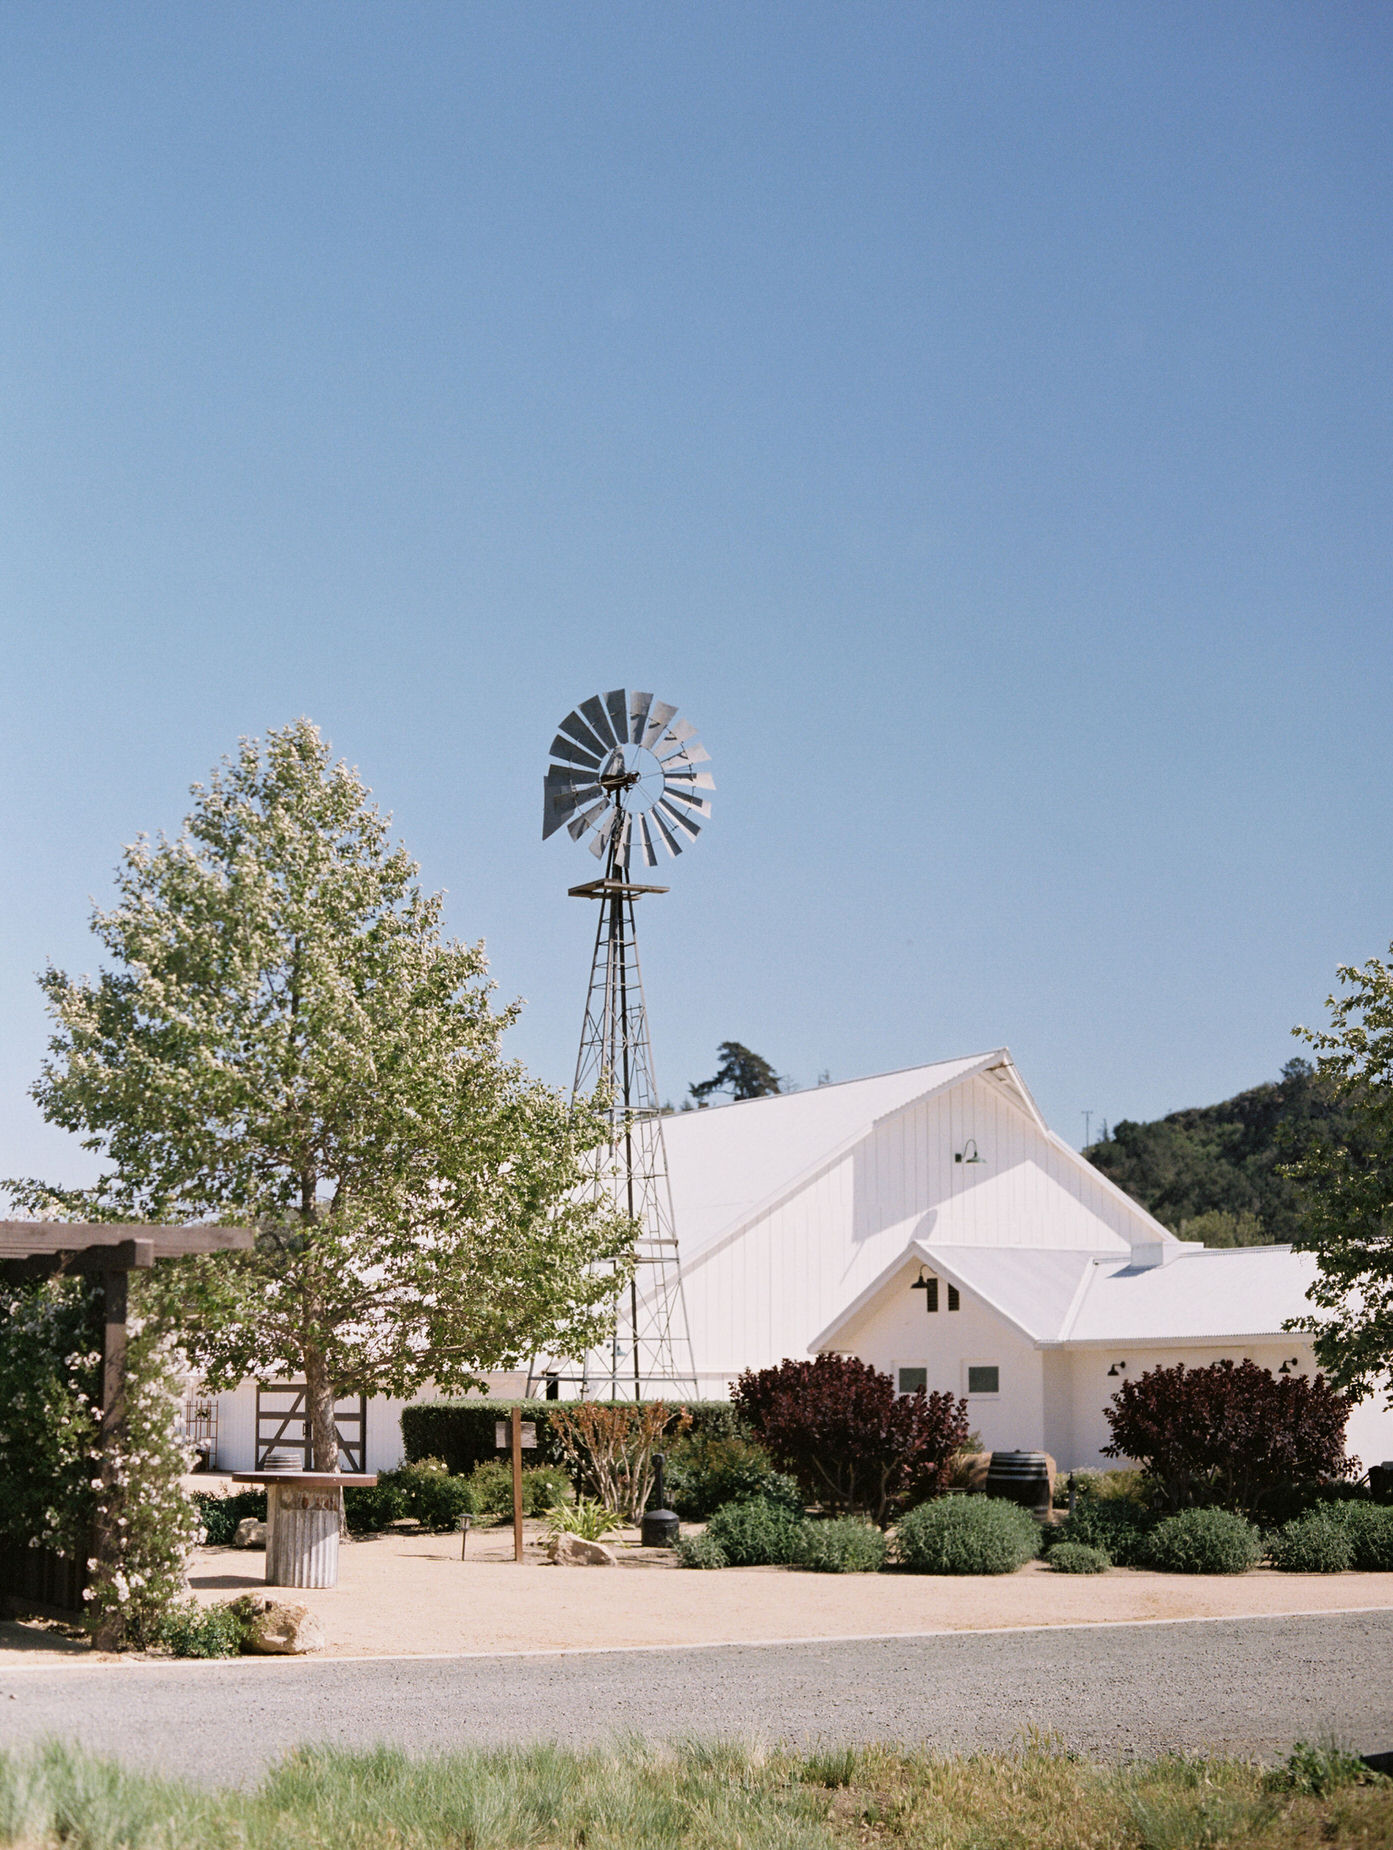 The White Barn Wedding Venue in San Luis Obispo